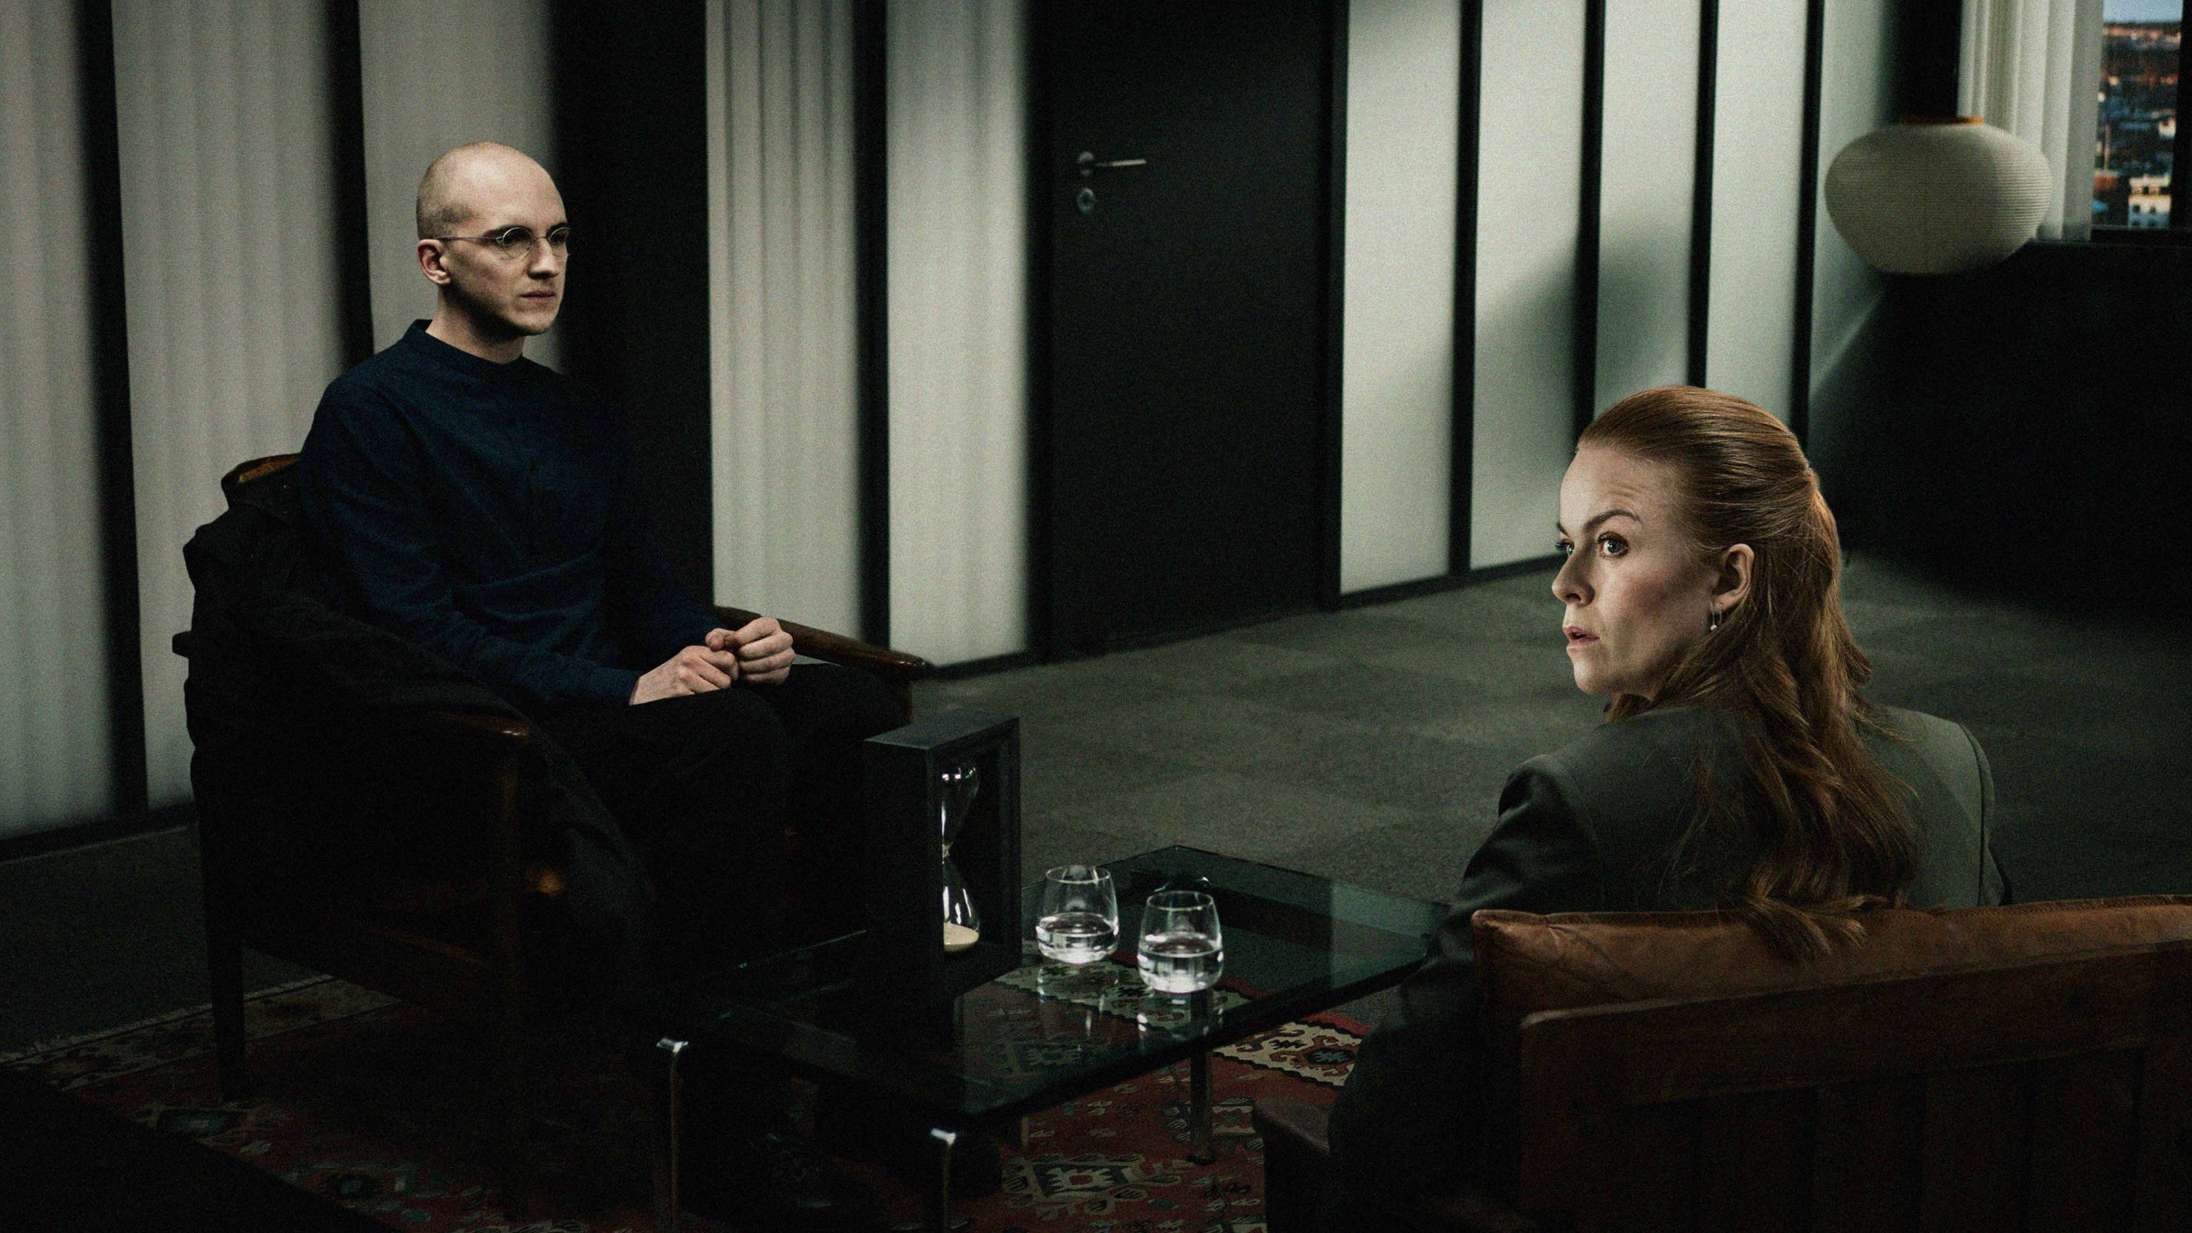 ’Klienten’: Anton Hjejle er eneste lyspunkt i fejlslået dansk thriller